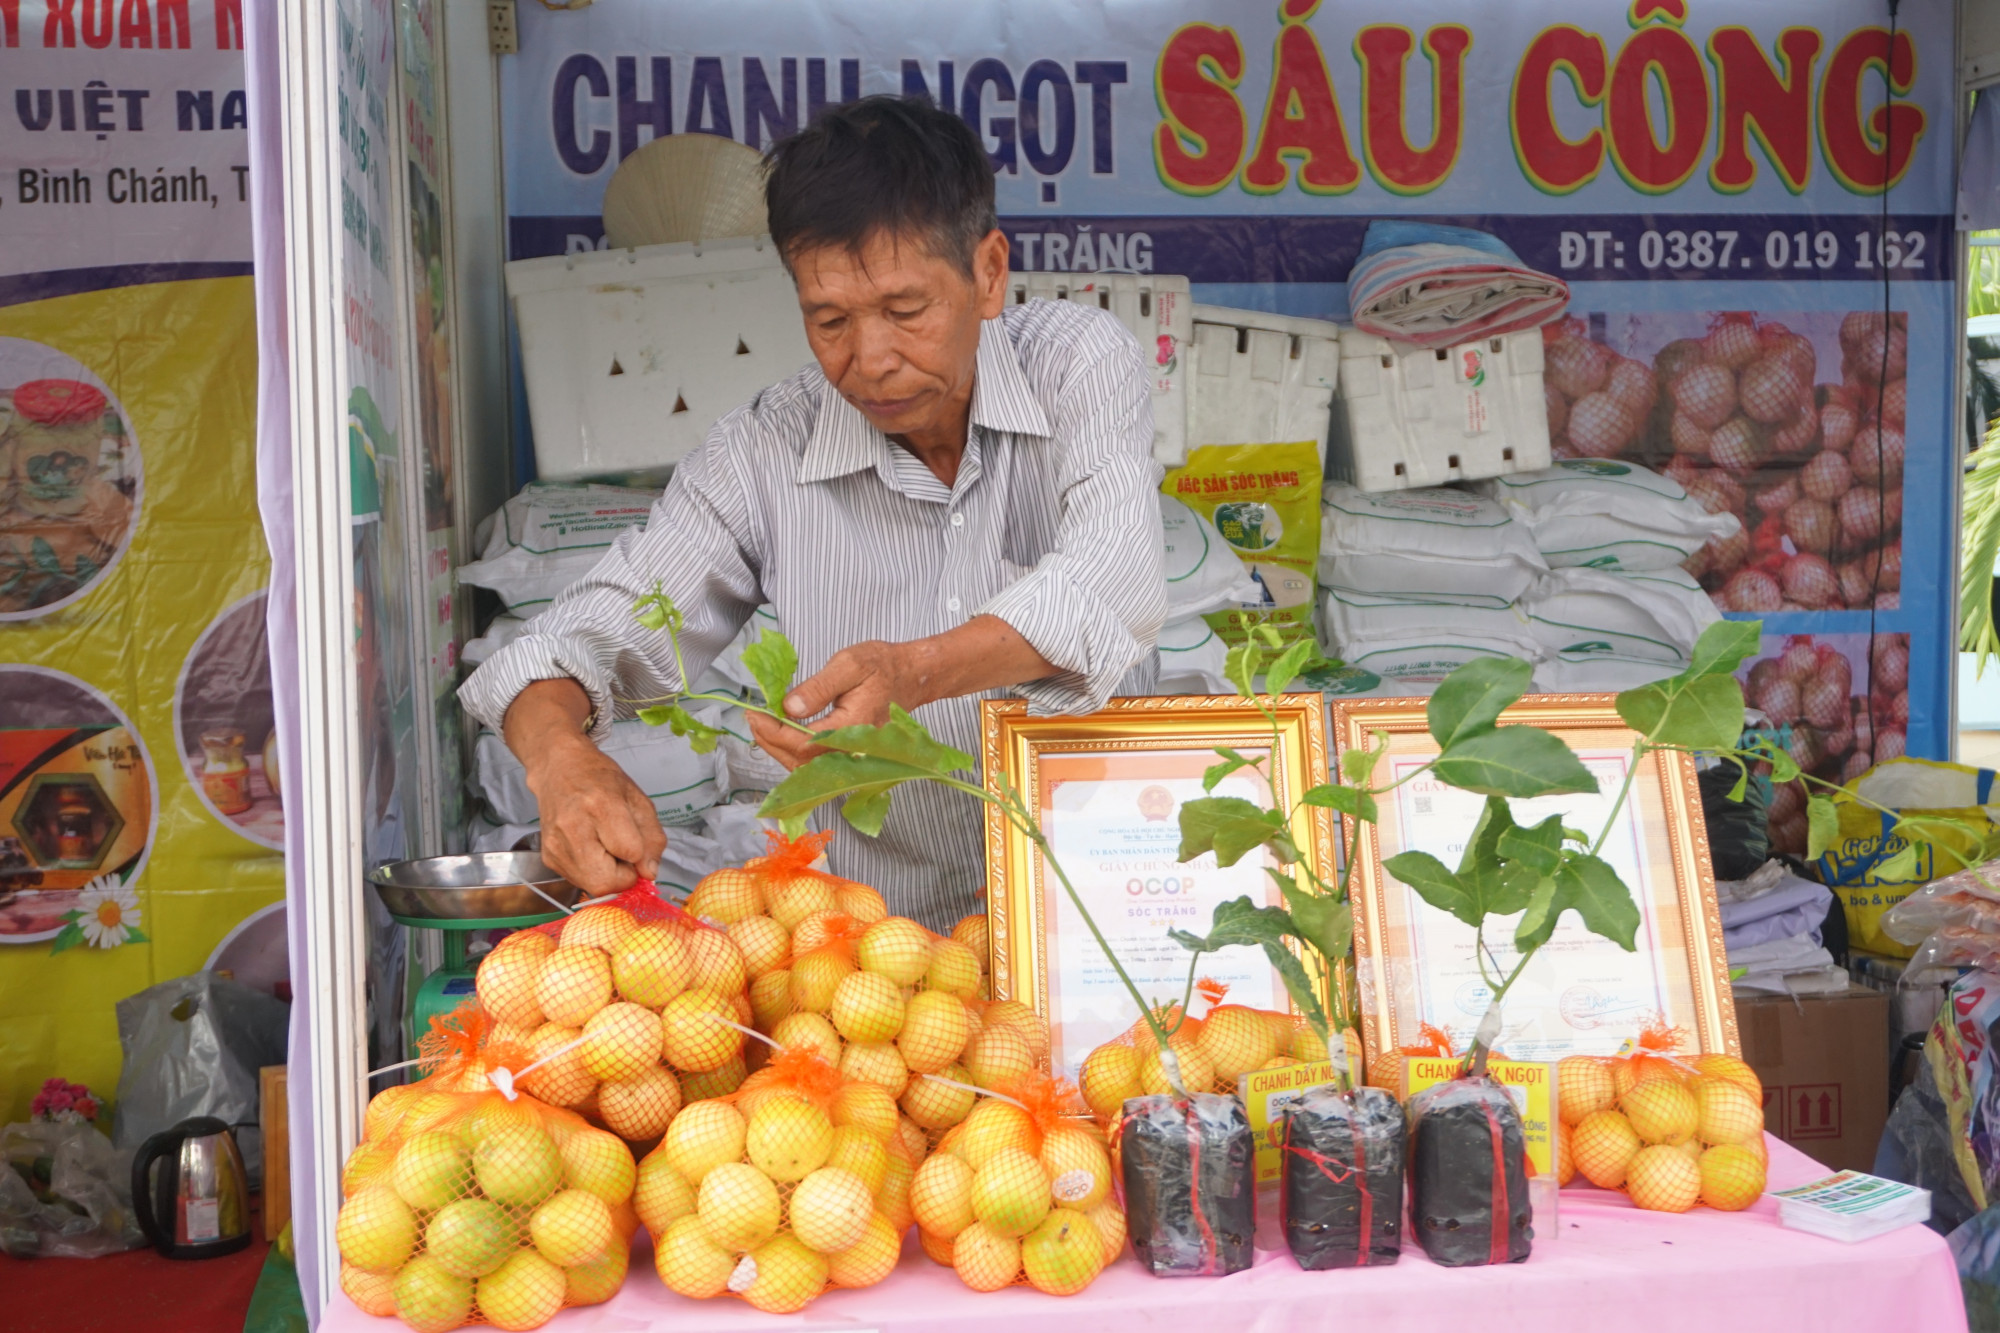 Ông Sáu Công bán chanh leo ngọt giá 110.000 đồng tại hội chợ